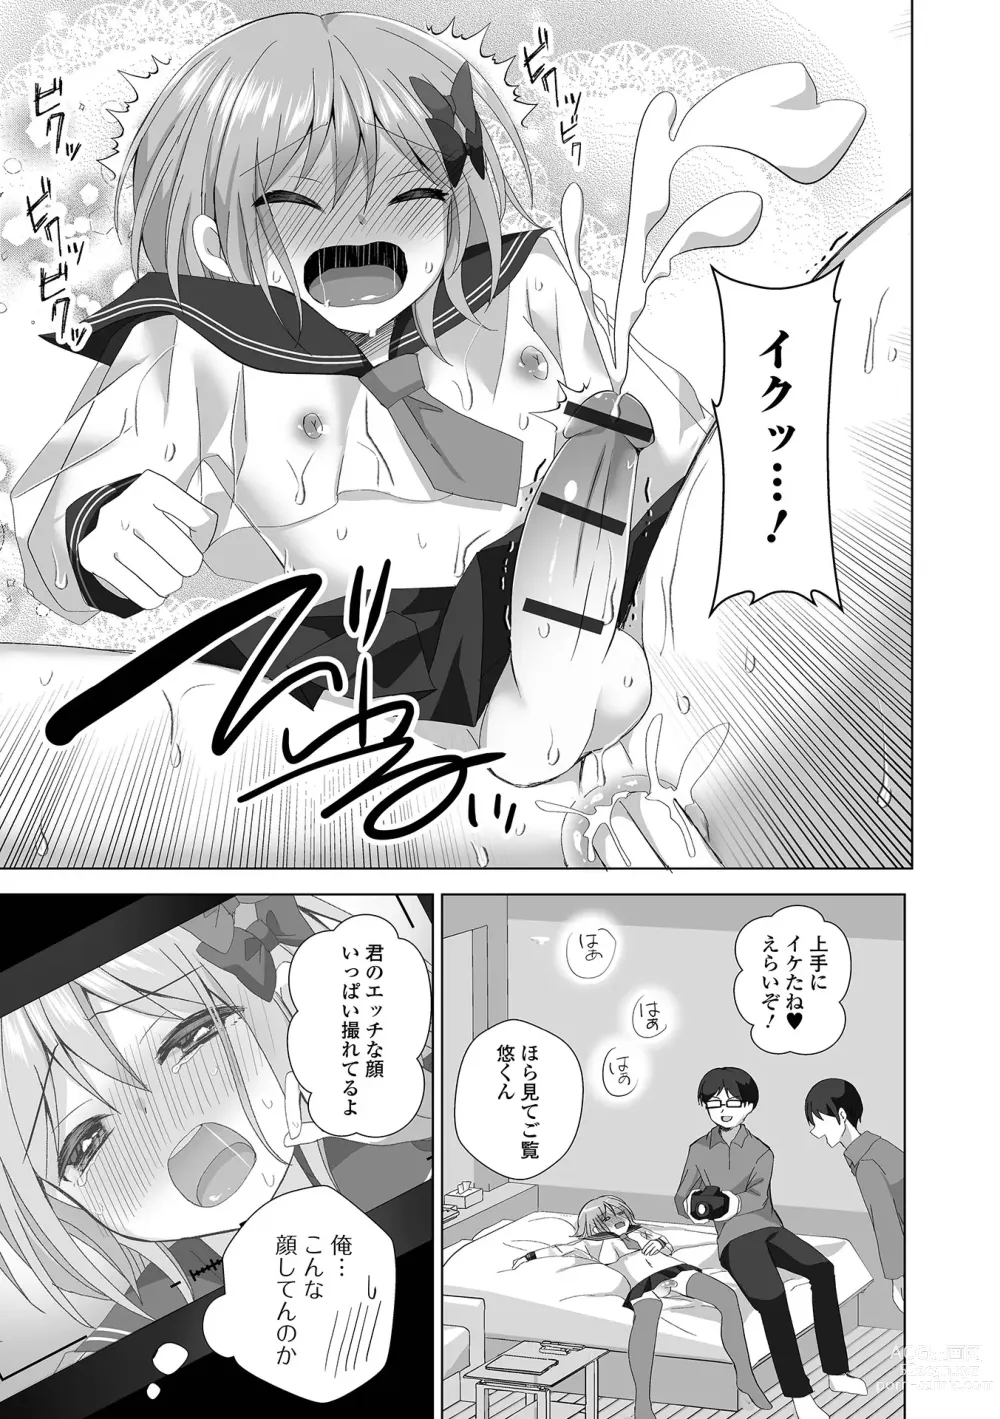 Page 11 of manga Gekkan Web Otoko no Ko-llection! S Vol. 91